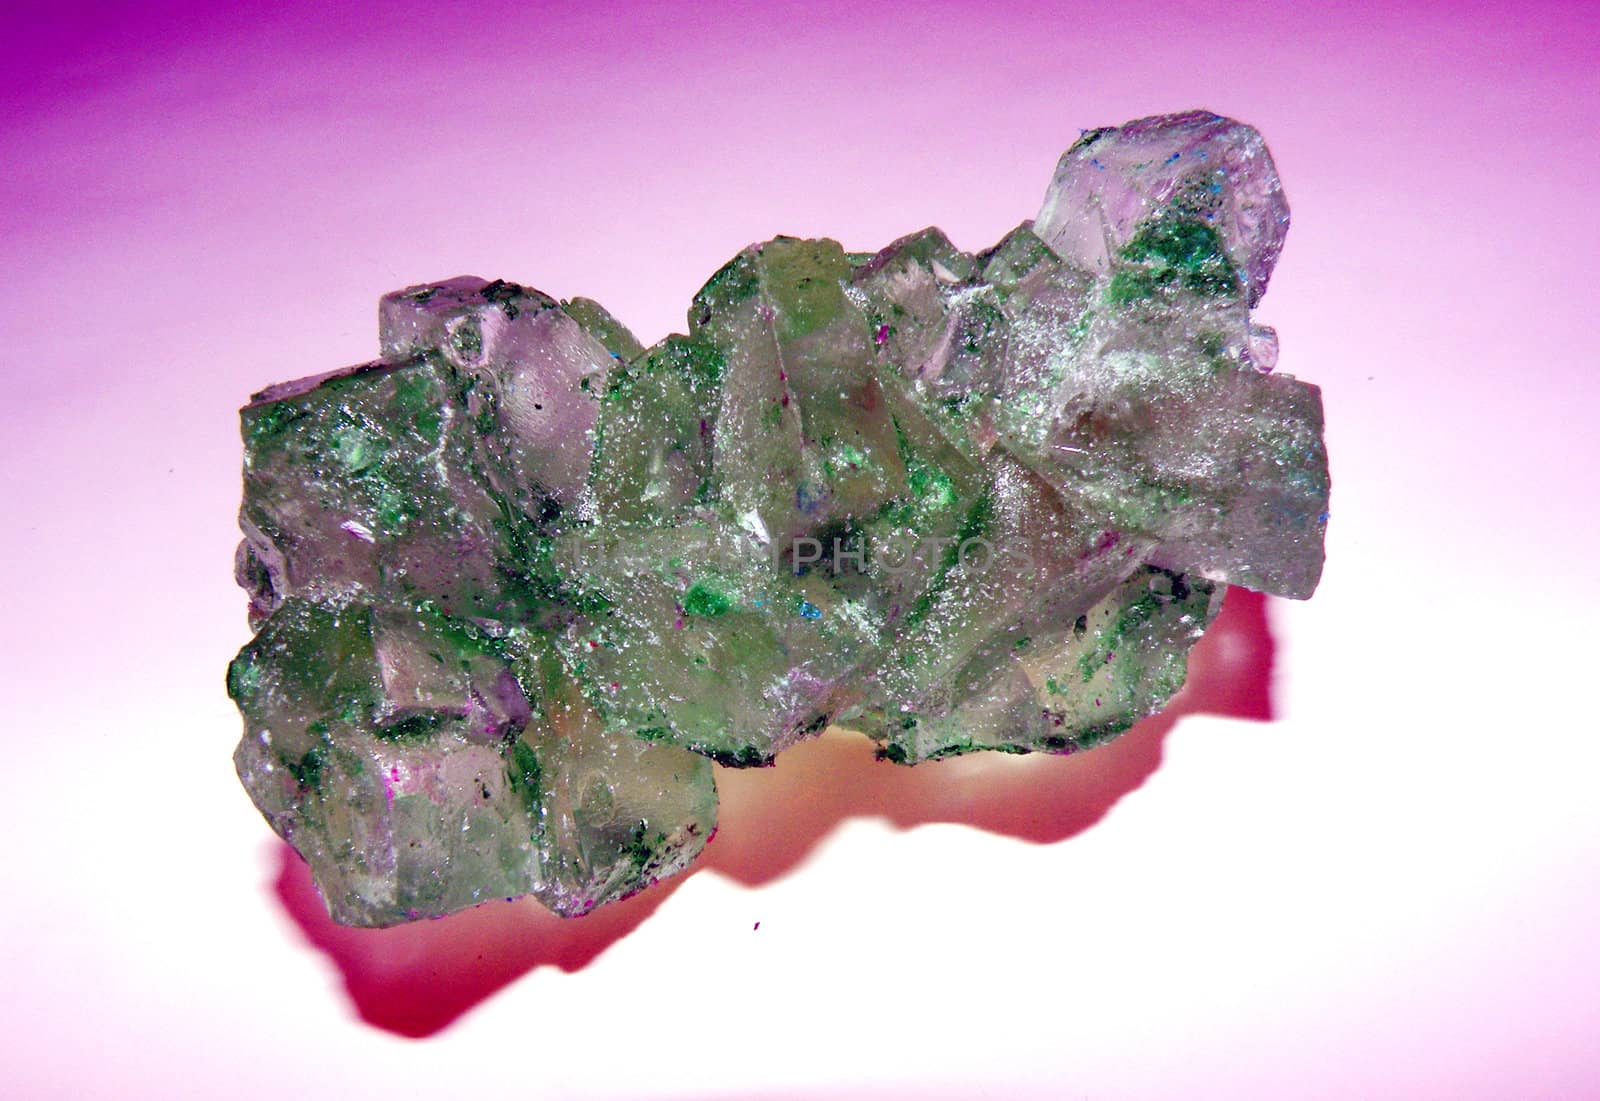 green rock candy by photosbyrob